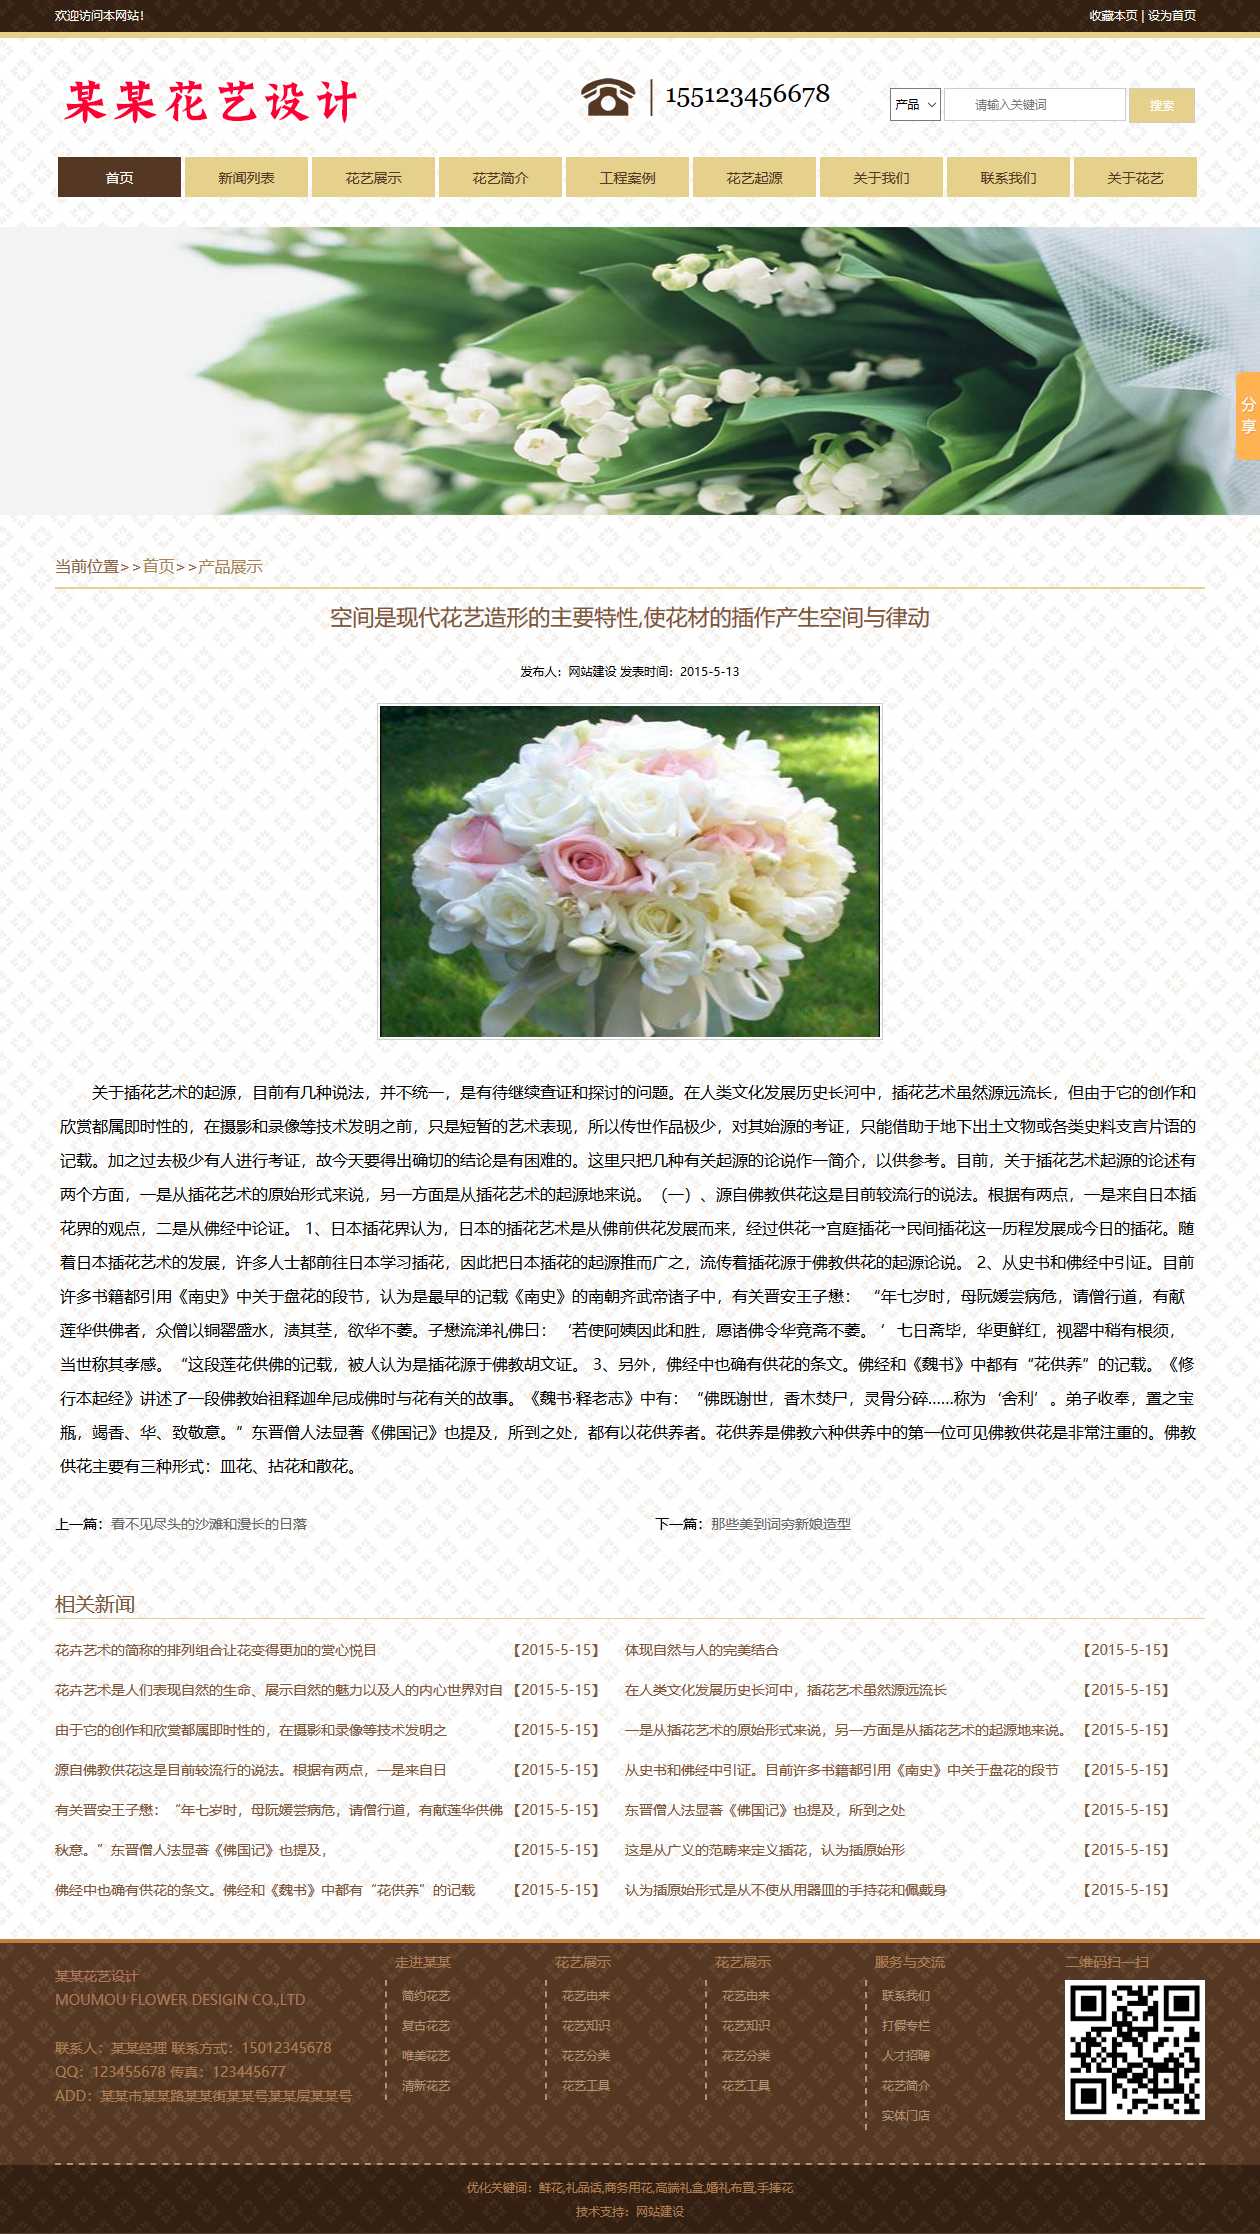 花卉、鲜花网站图片详情效果图